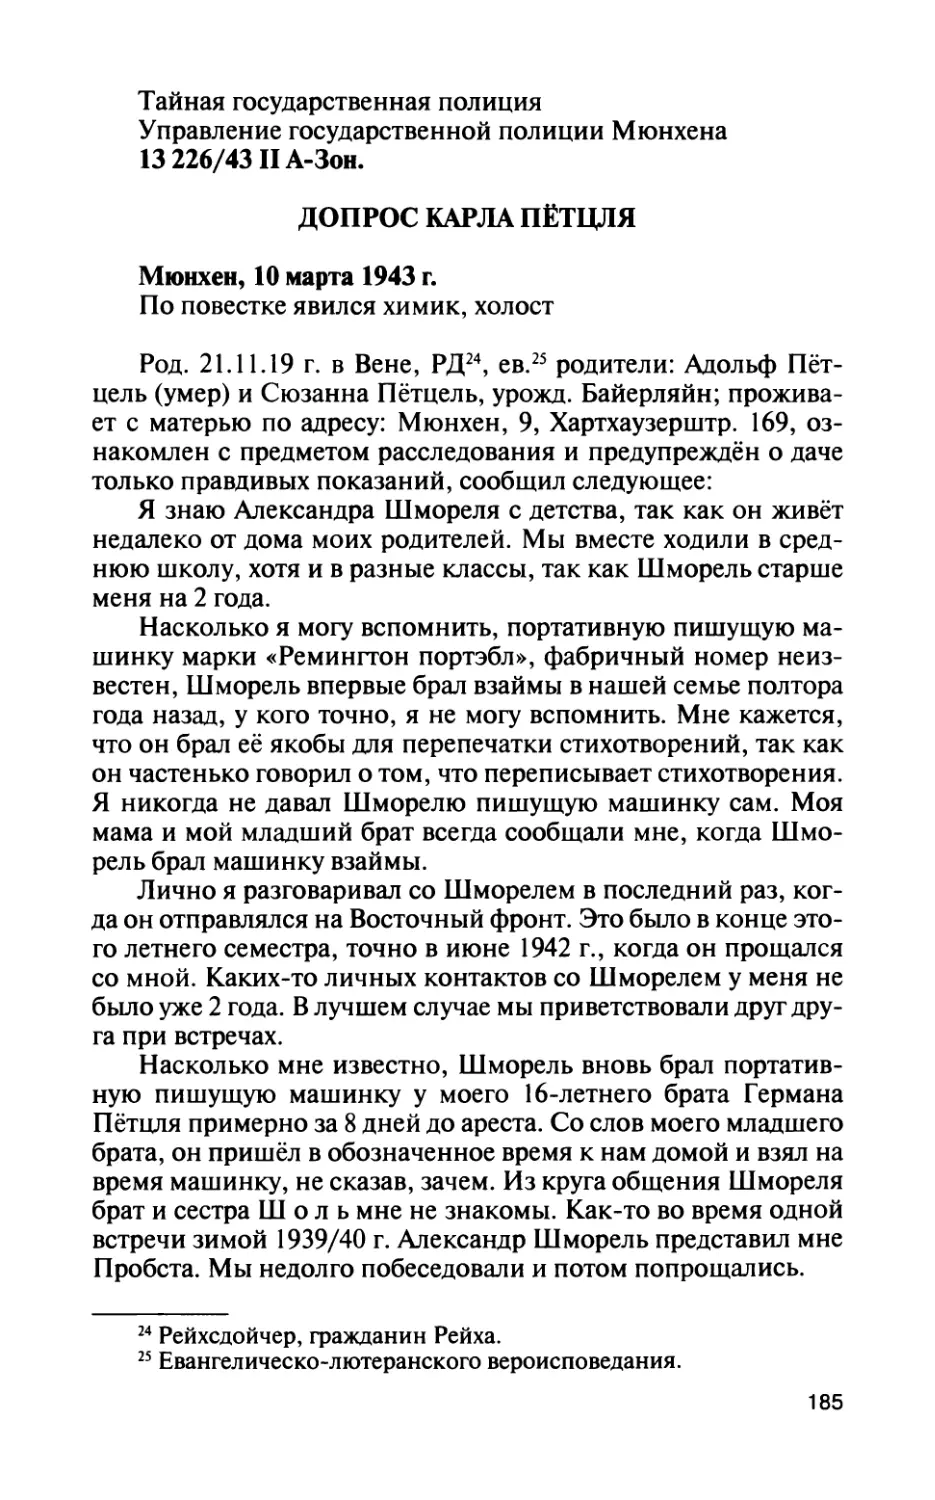 Допрос К. Пётцля 10 марта 1943 г